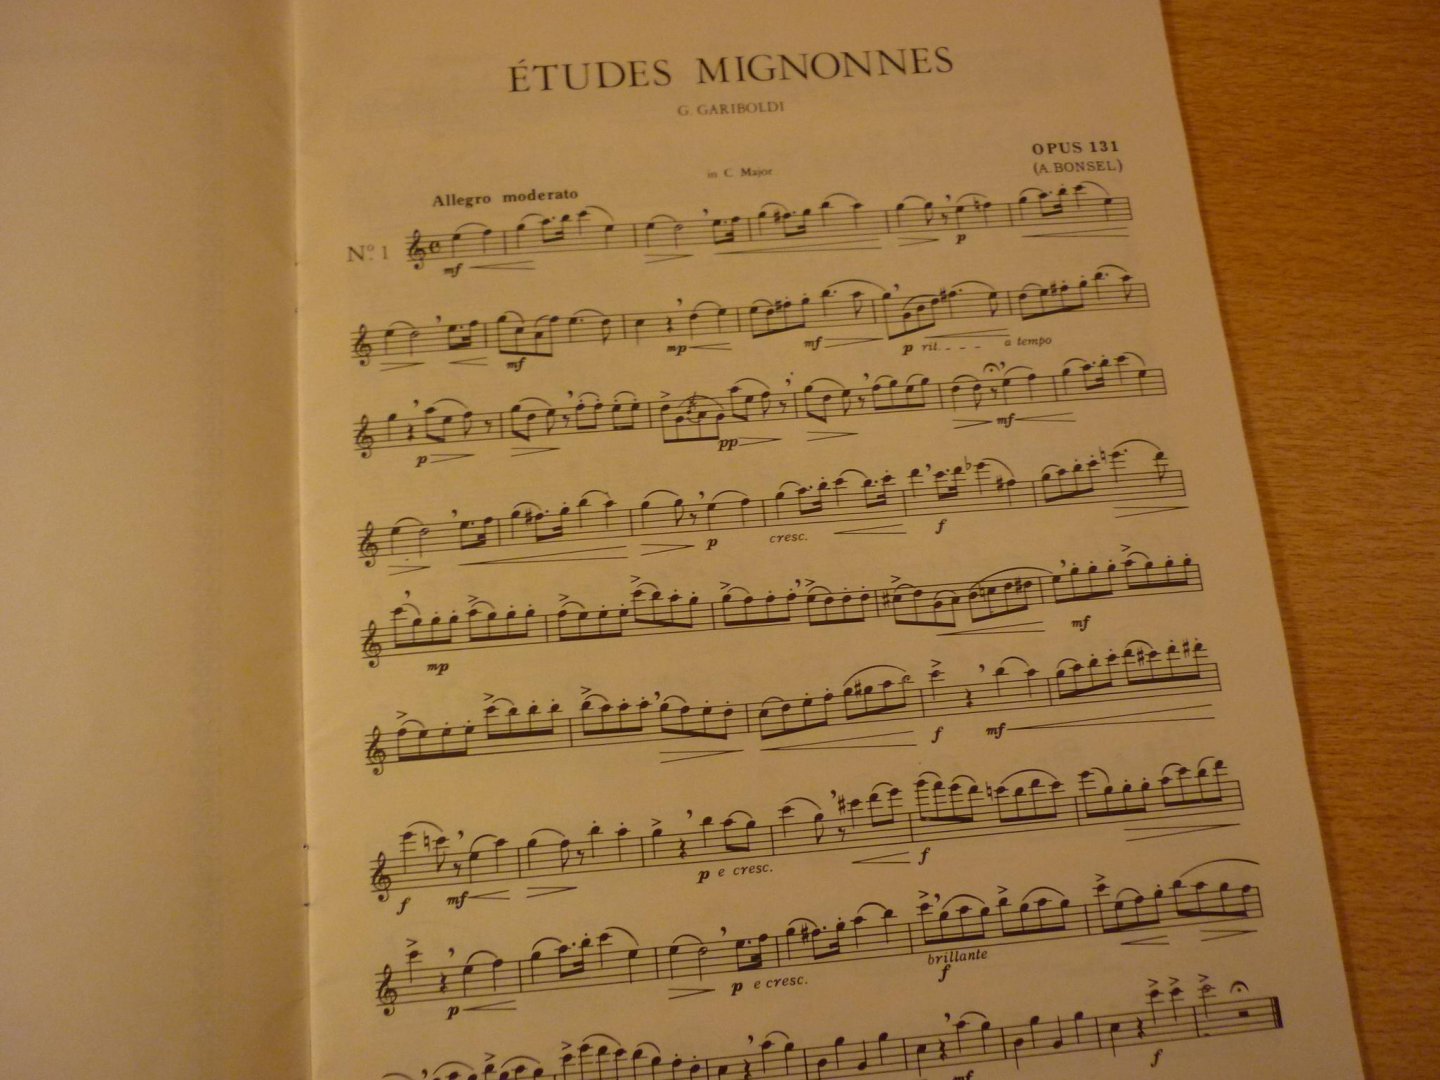 Gariboldi; G. - A. Bonsel - Etudes Mignonnes; Opus 131 pour Flute - A.Bonsel